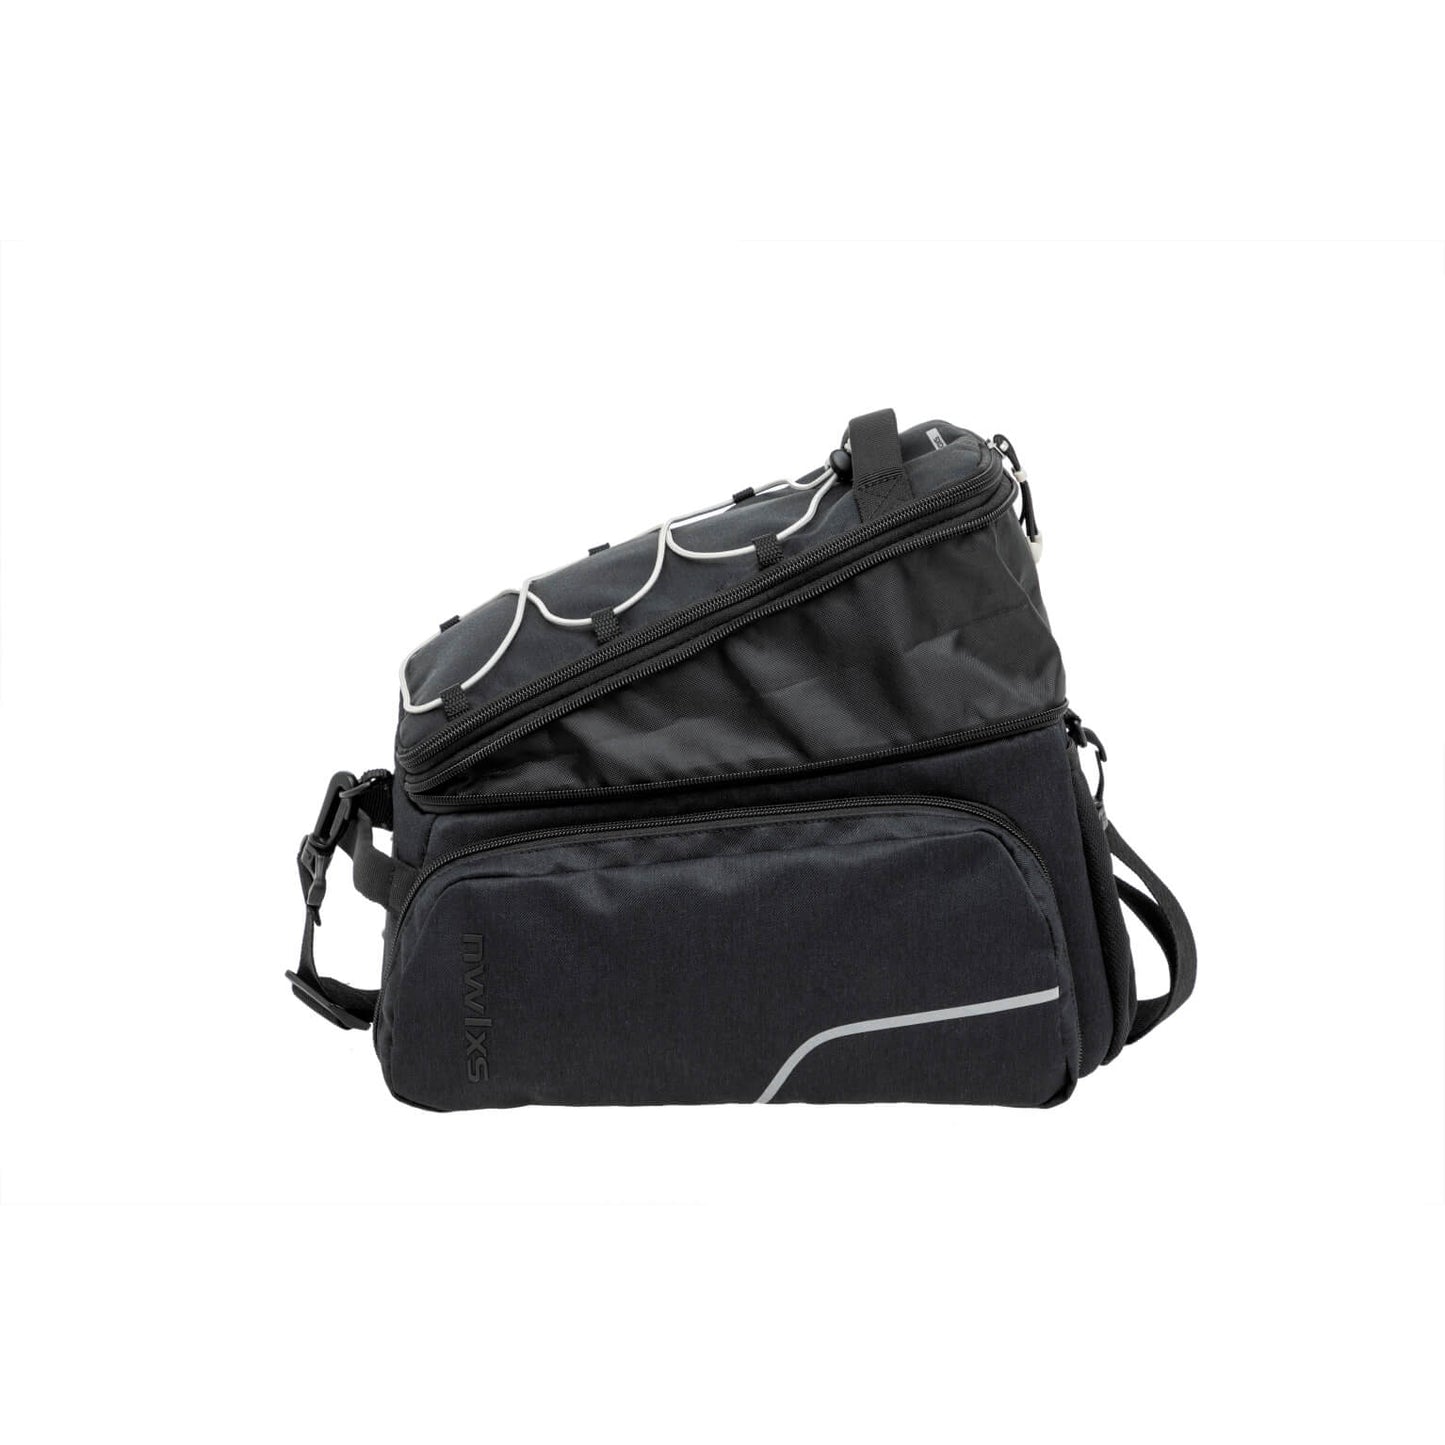 New Looxs Sport Trunkbag - Black - Fietsbrug Bag - 29L